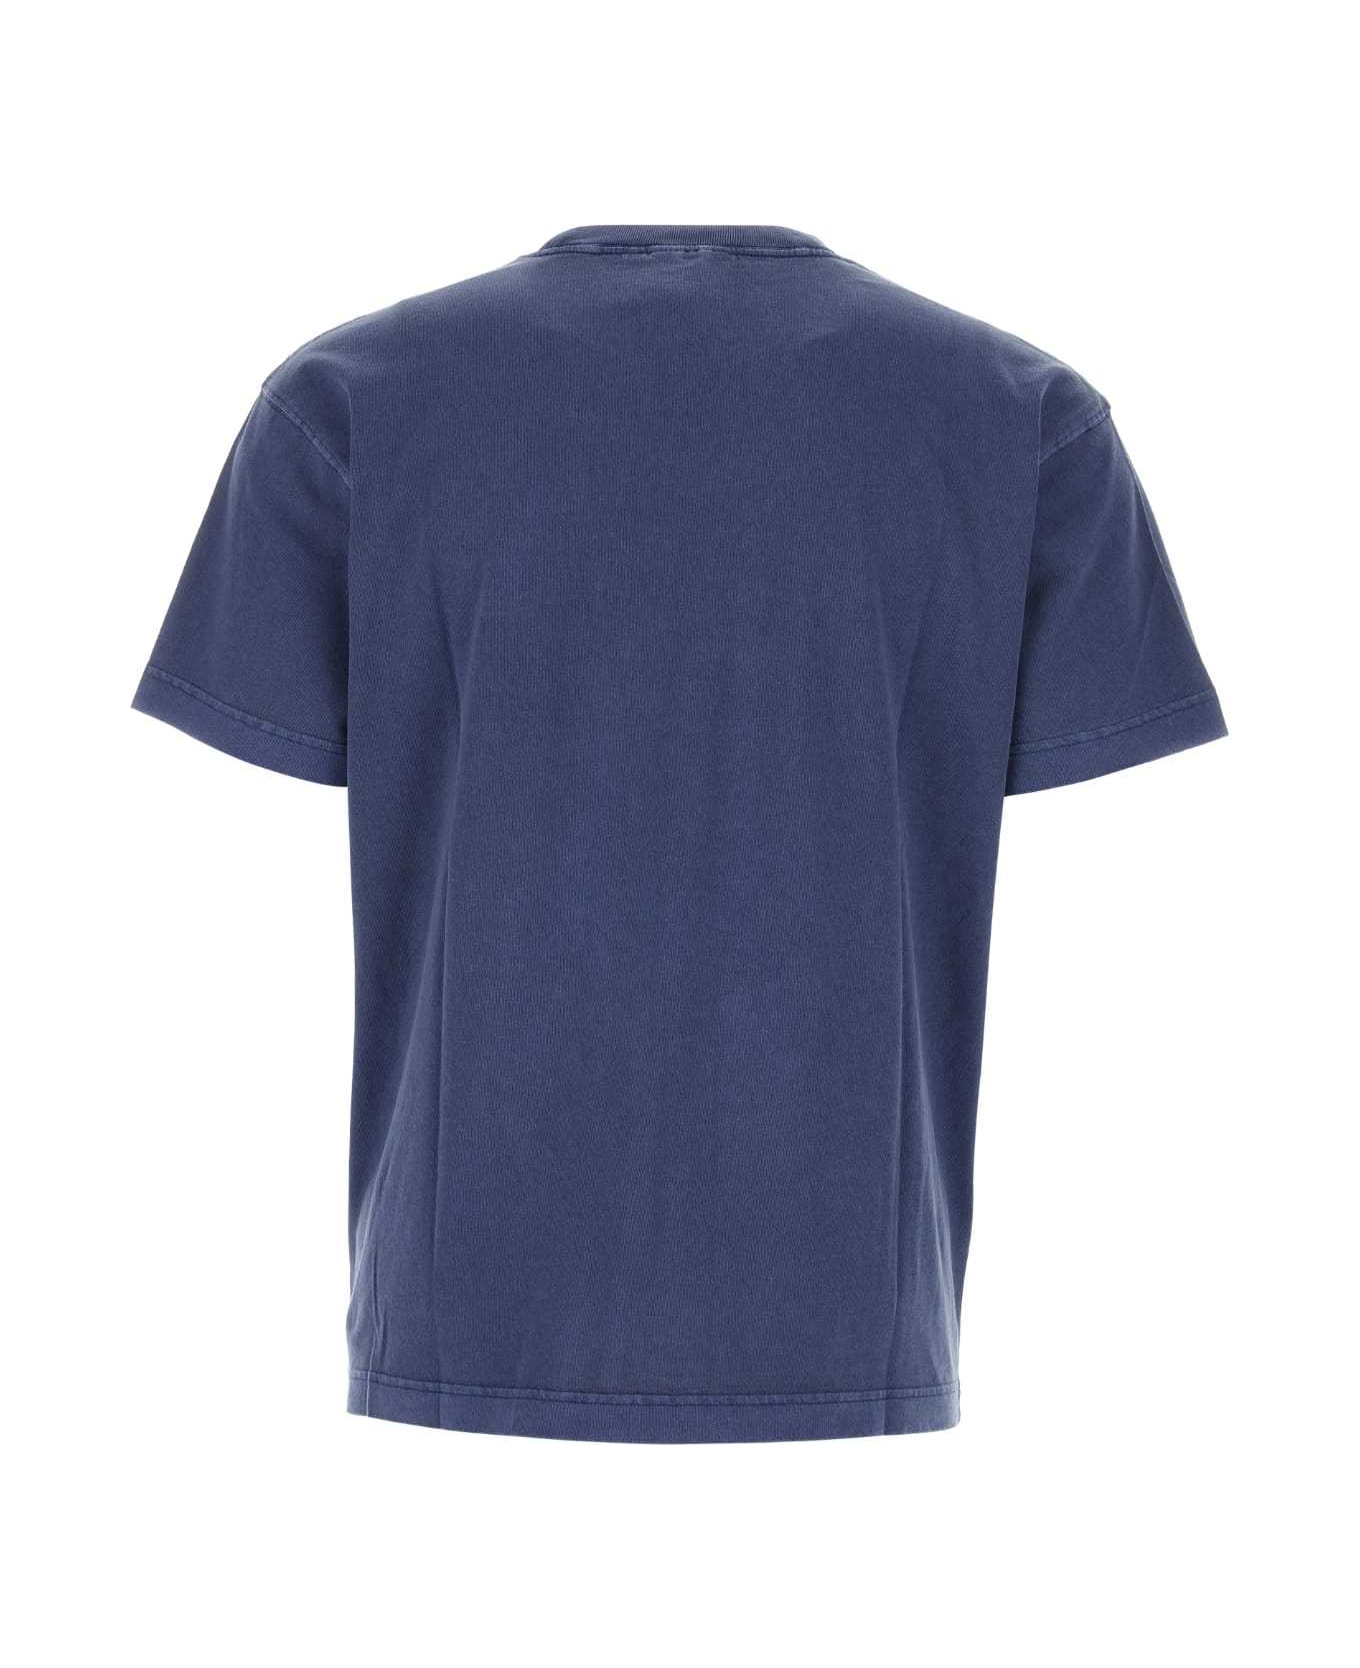 Carhartt Air Force Blue Cotton Oversize S/s Nelson T-shirt - ELDER